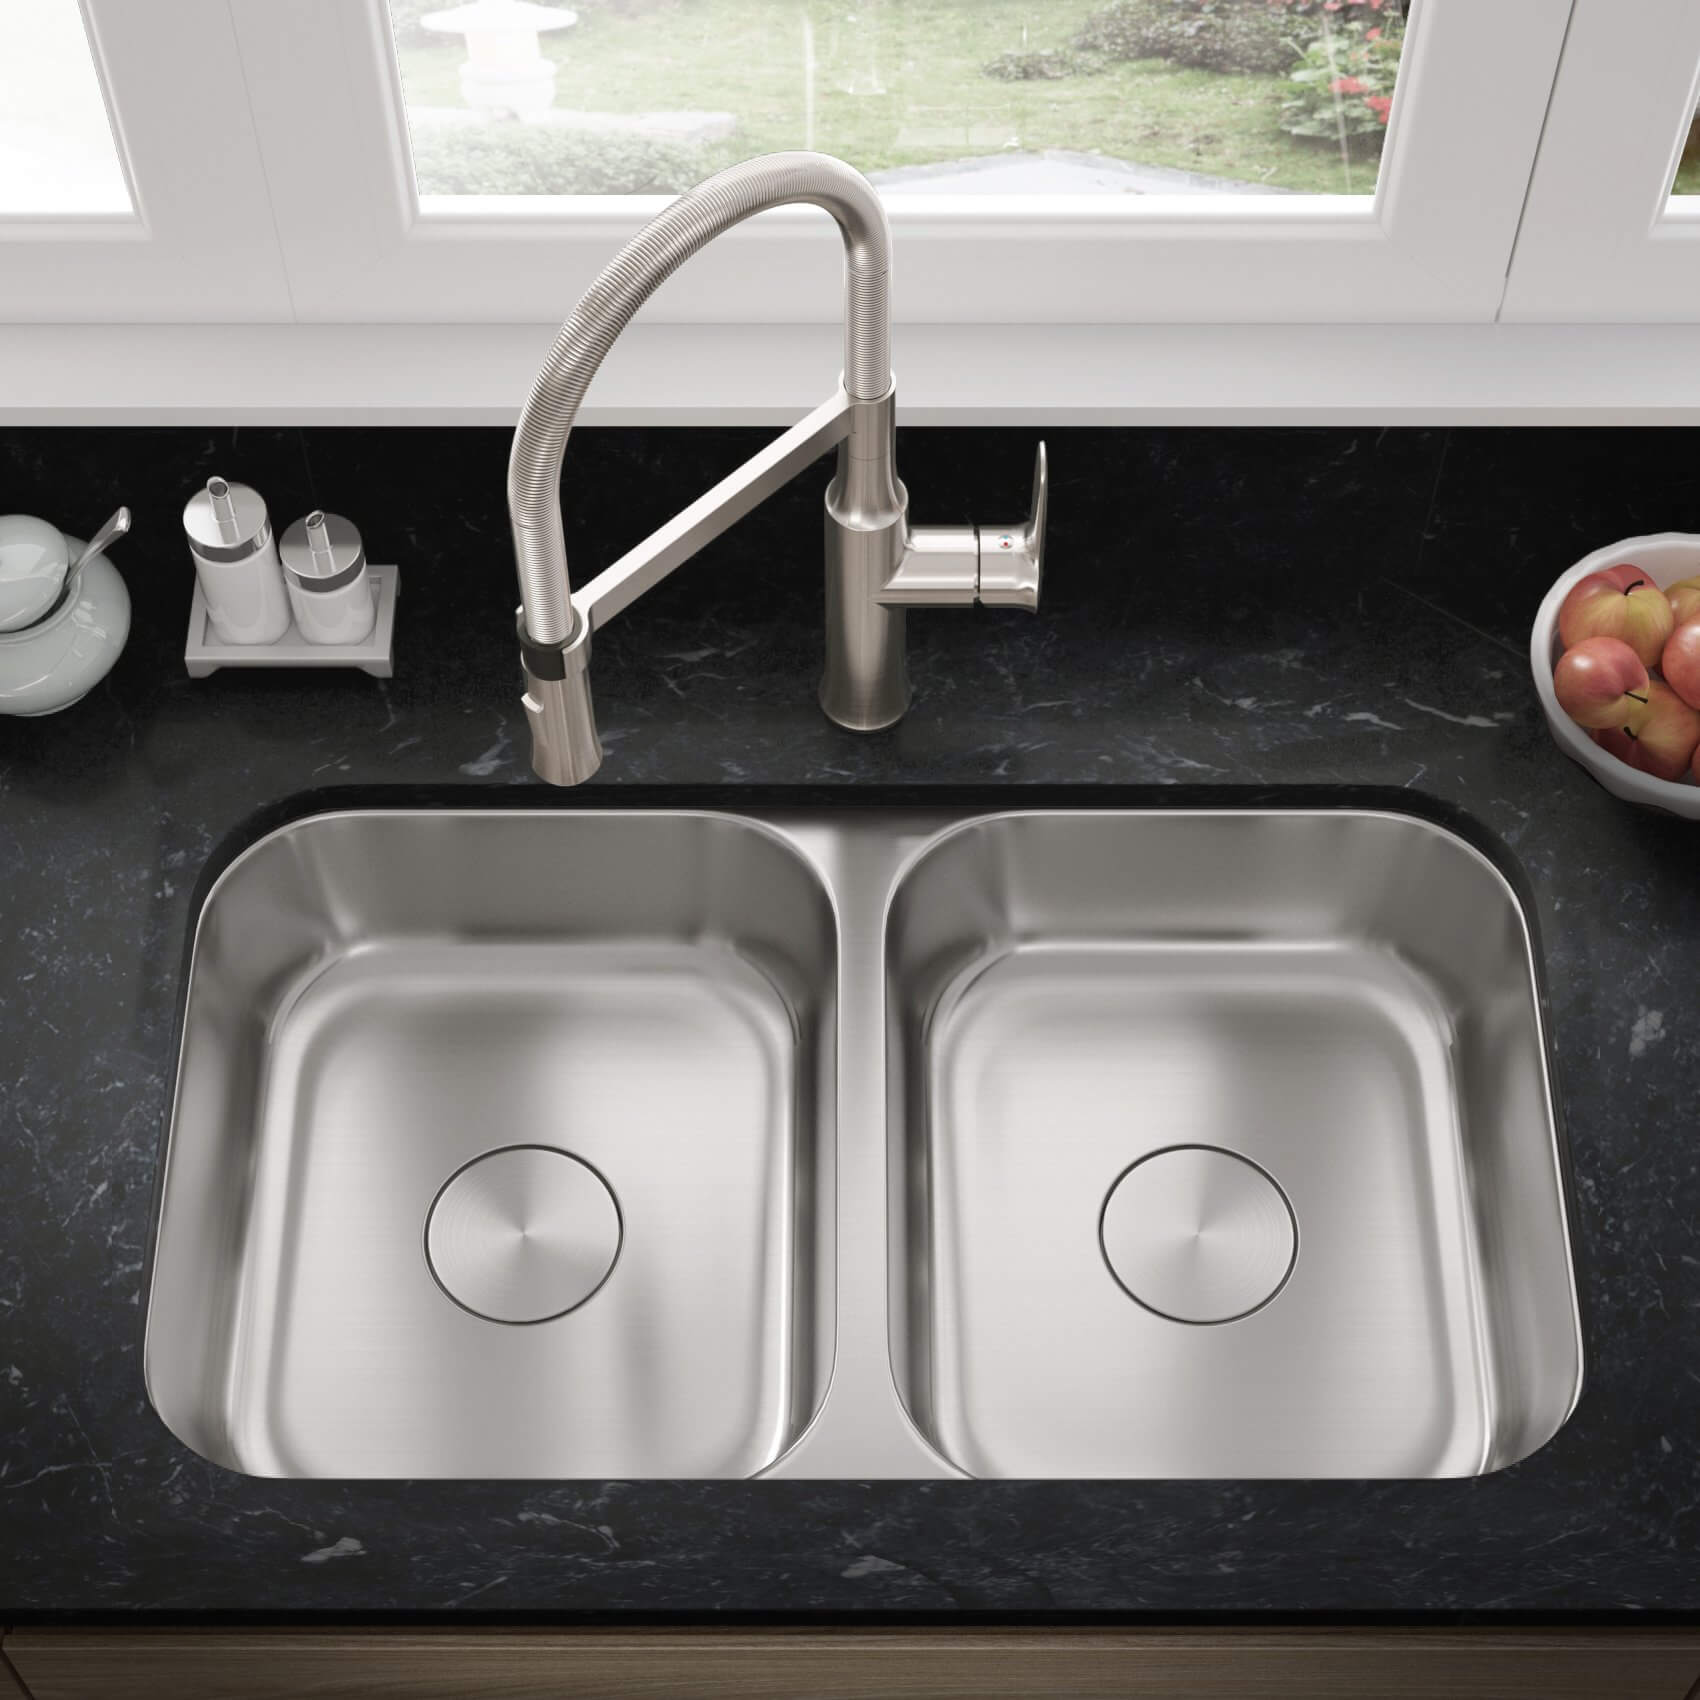 ADA-KSN-3118-D Double Bowl Undermount Kitchen Sink – Allora USA